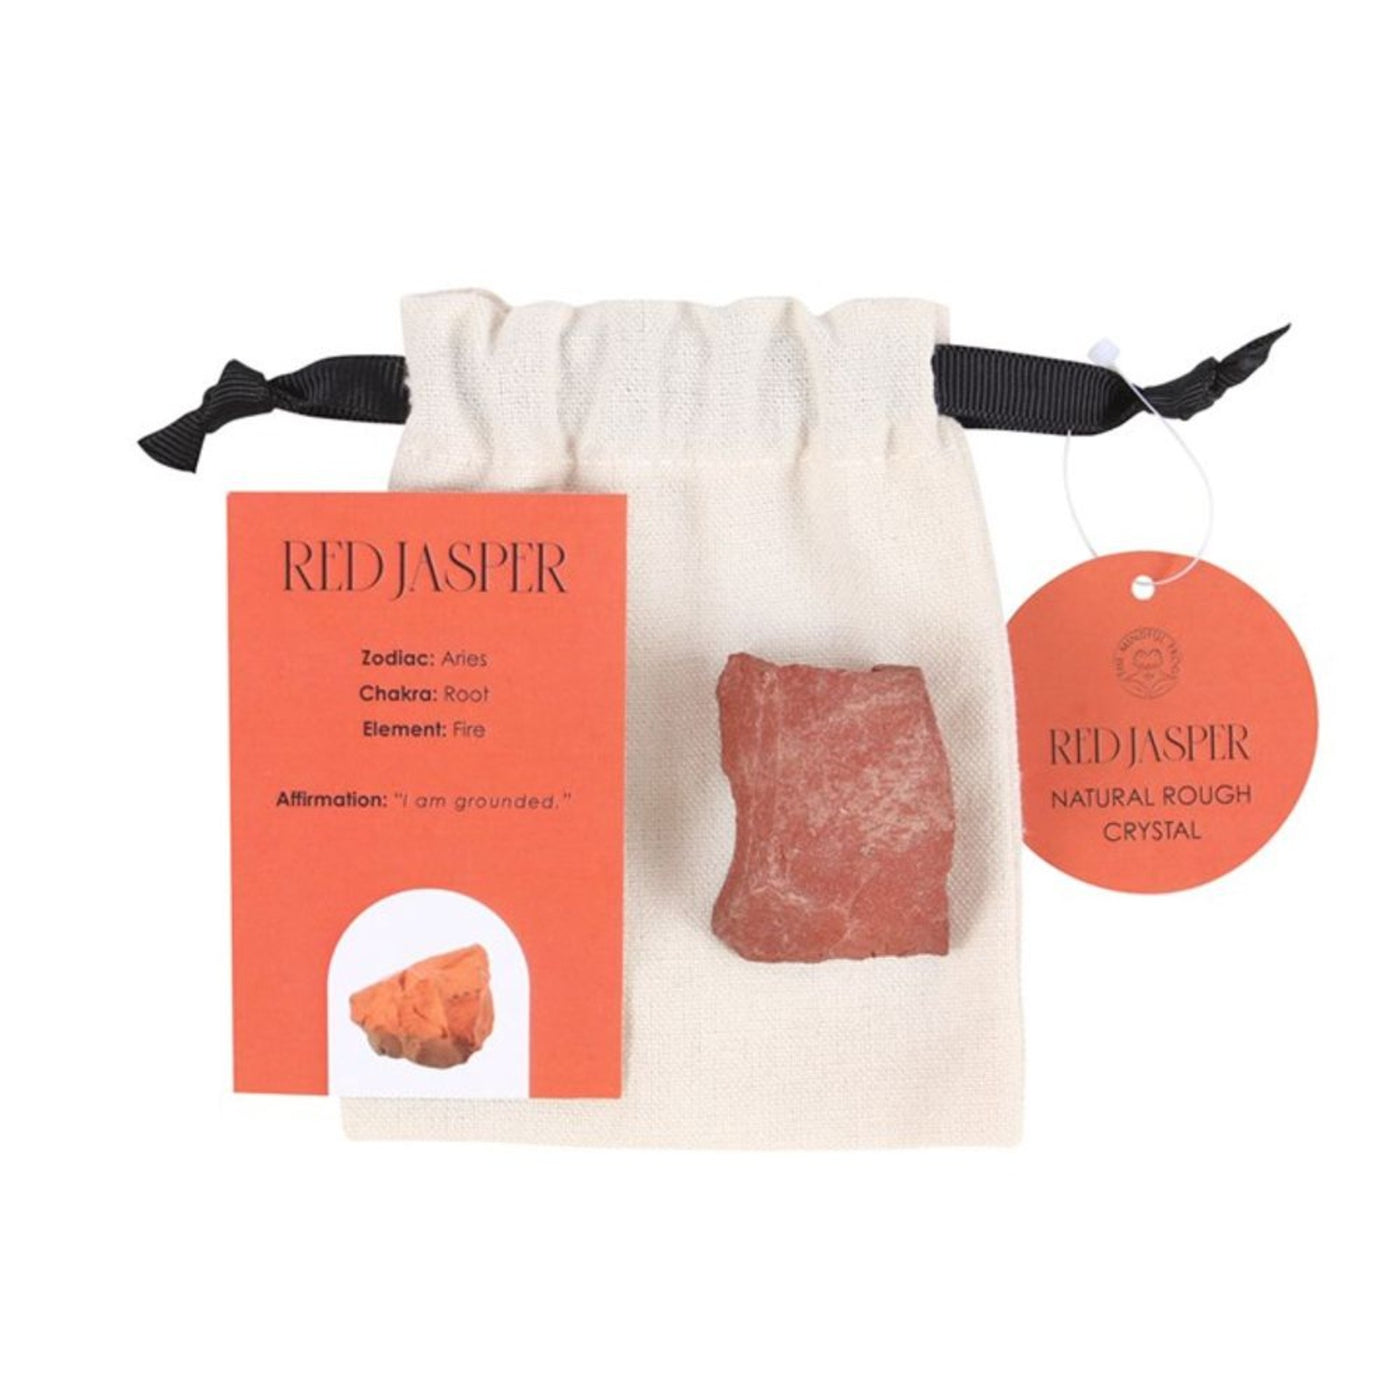 Red Jasper Healing Rough Gemstone Roc With Storage Bag.